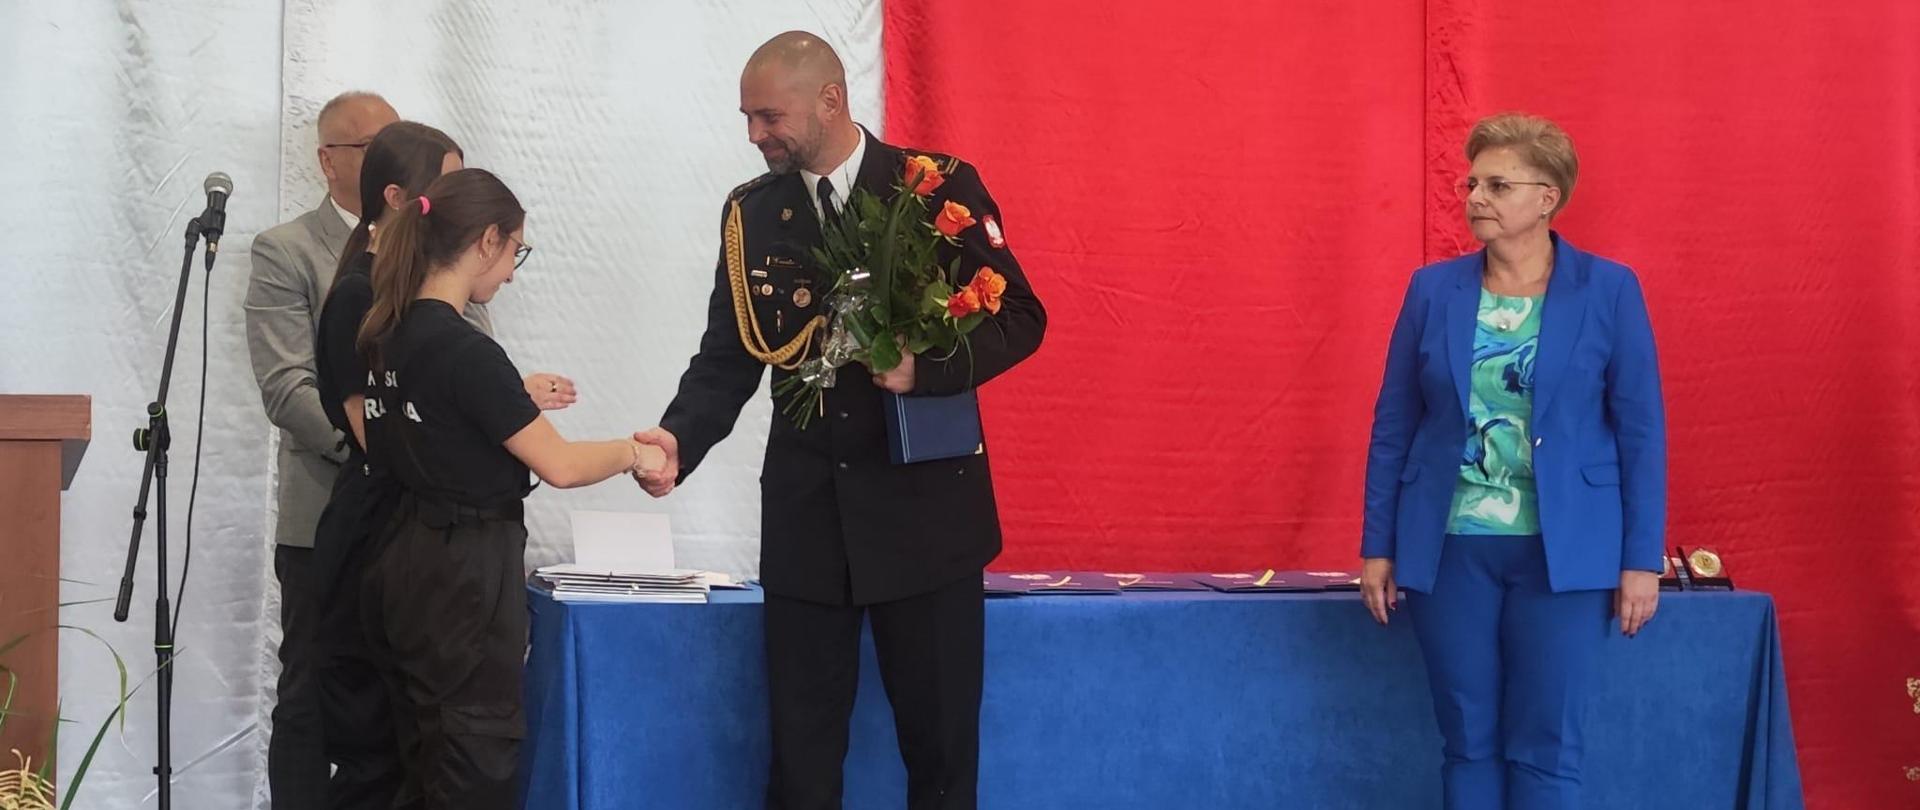 Wręczenie świadectw ukończenia roku szkolnego na sali gimnastycznej IV LO w Wałbrzychu. W tle biało czerwona flaga